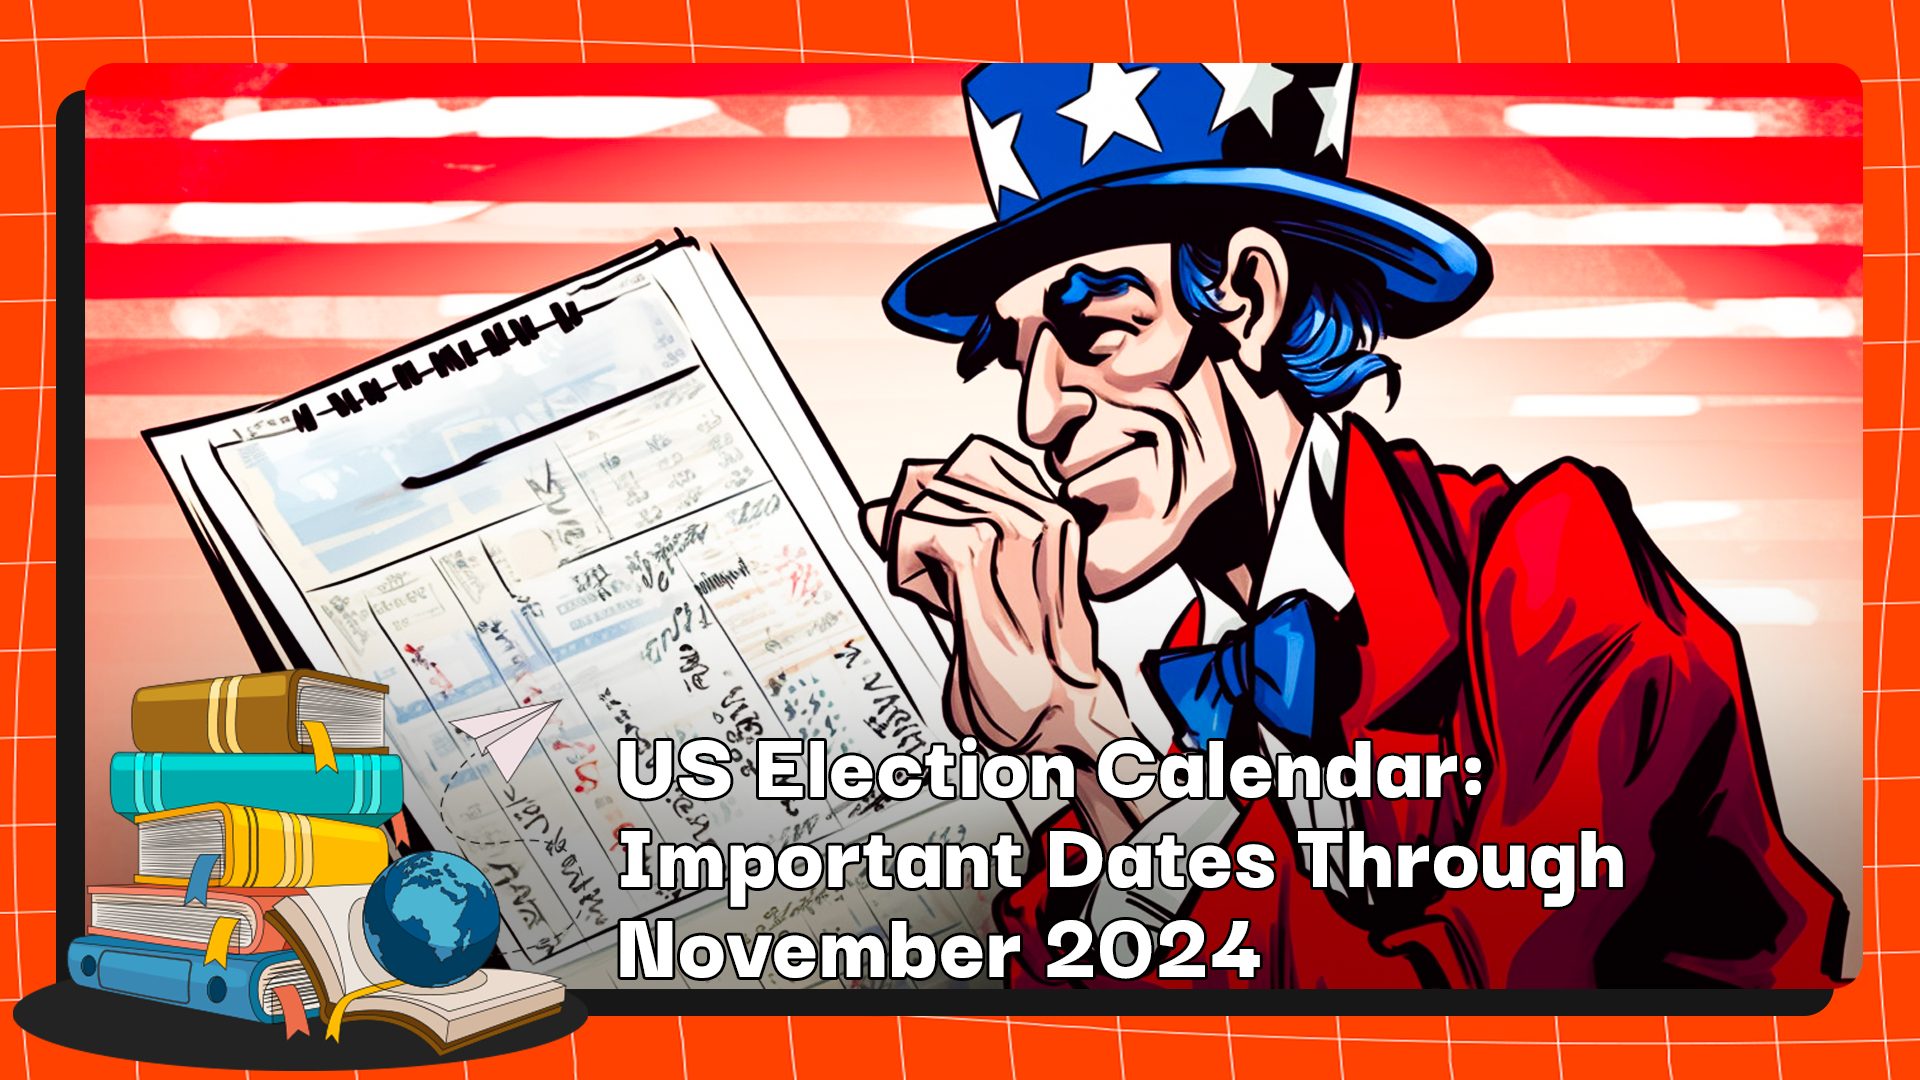 Calendario electoral de EE. UU.: fechas importantes hasta noviembre de 2024